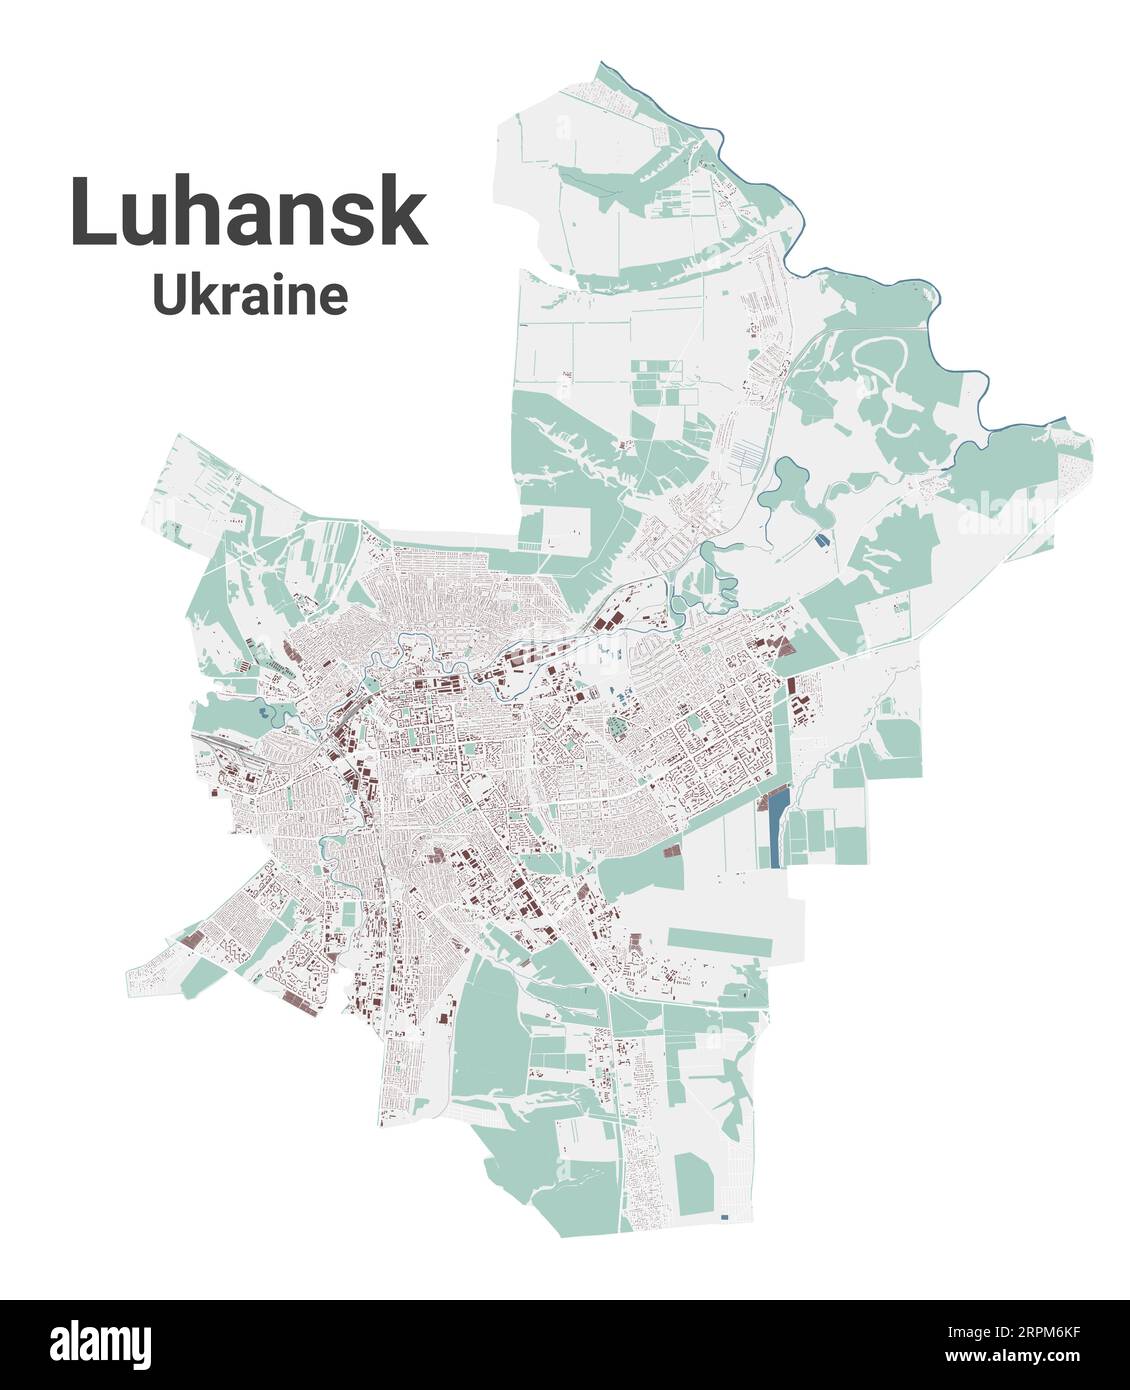 Carte de Luhansk, ville en Ukraine. Carte de la zone administrative municipale avec les bâtiments, les rivières et les routes, les parcs et les voies ferrées. Illustration vectorielle. Illustration de Vecteur